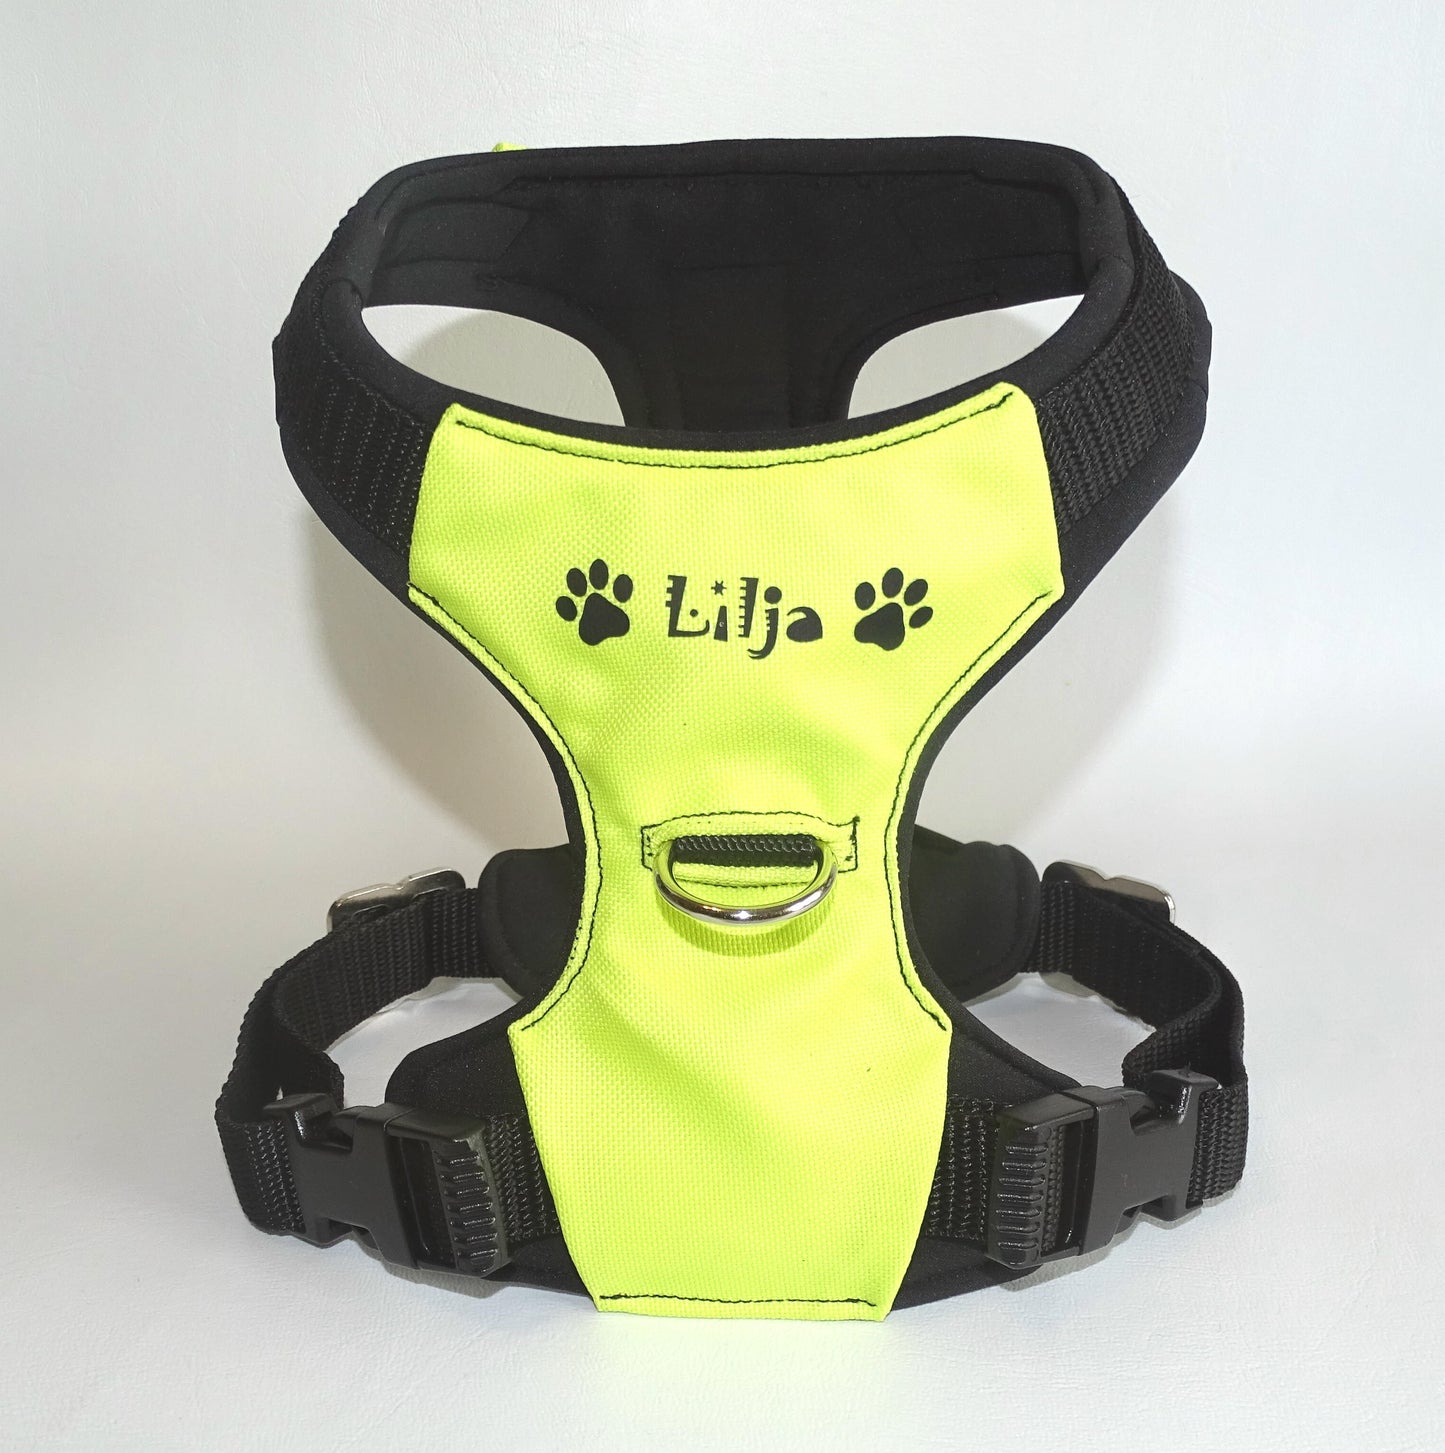 Gepolstertes Hunde Geschirr Neon gelb/grün, personalisierbar